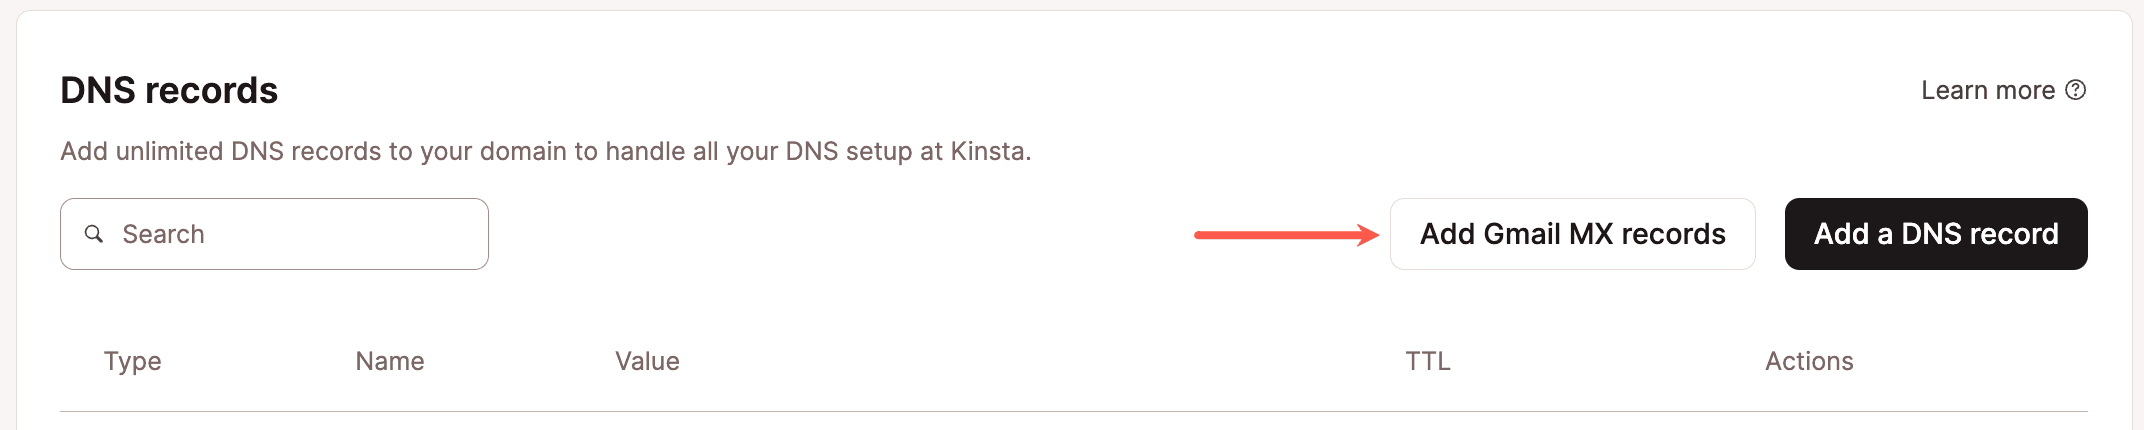 Ajouter des enregistrements MX Gmail à un domaine existant dans le DNS de Kinsta.